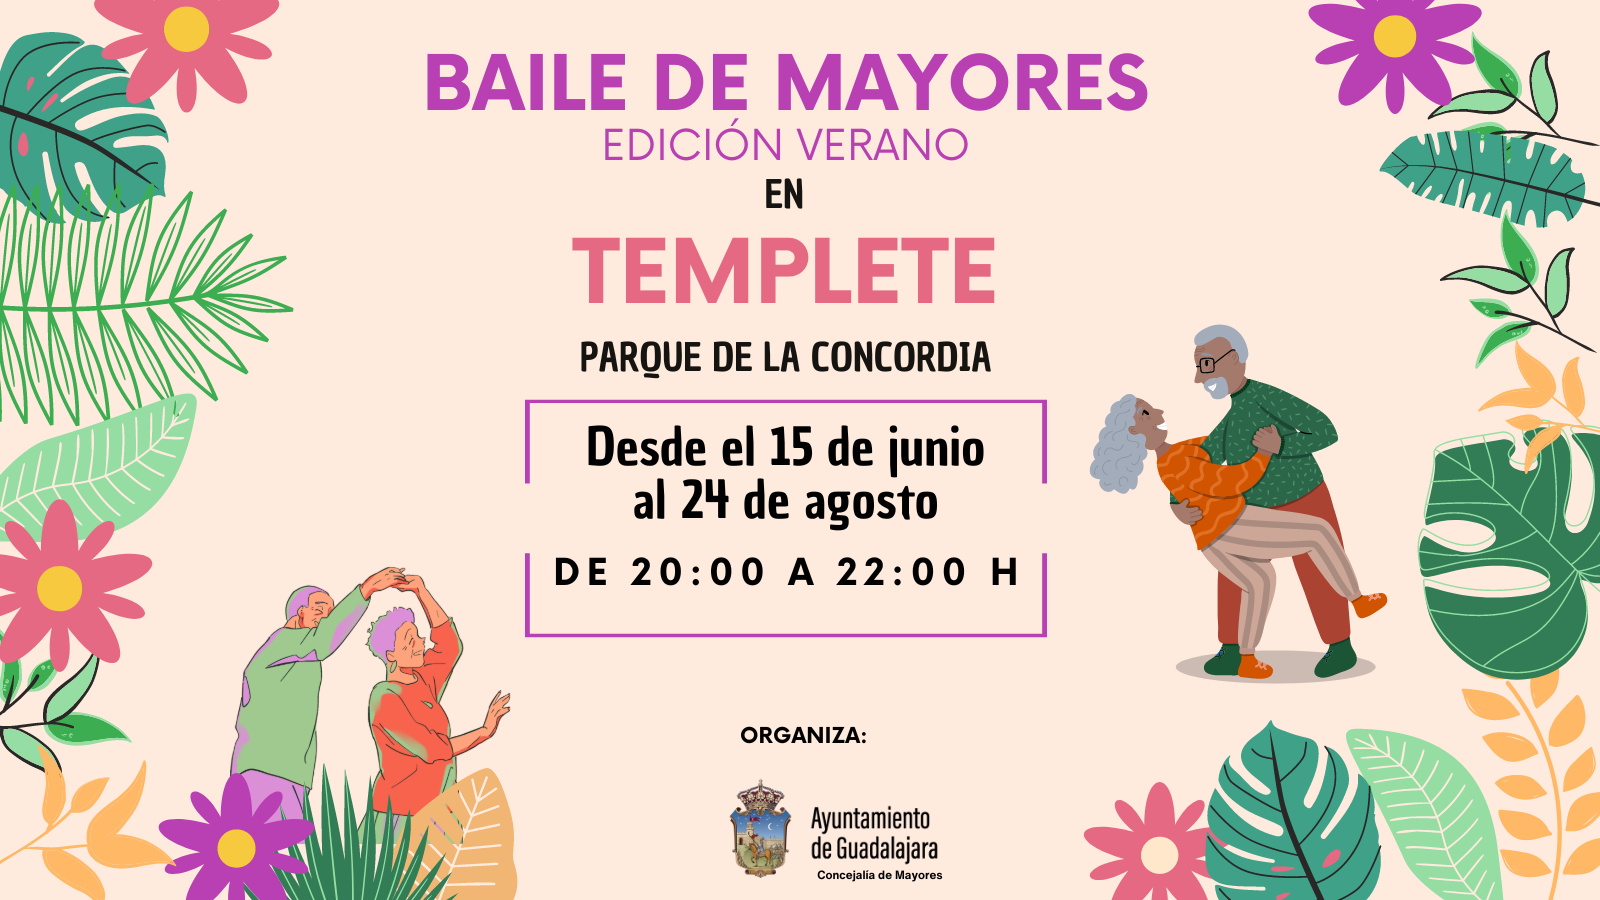 El baile de mayores de verano ser&#225; en el templete del parque de la Concordia de Guadalajara